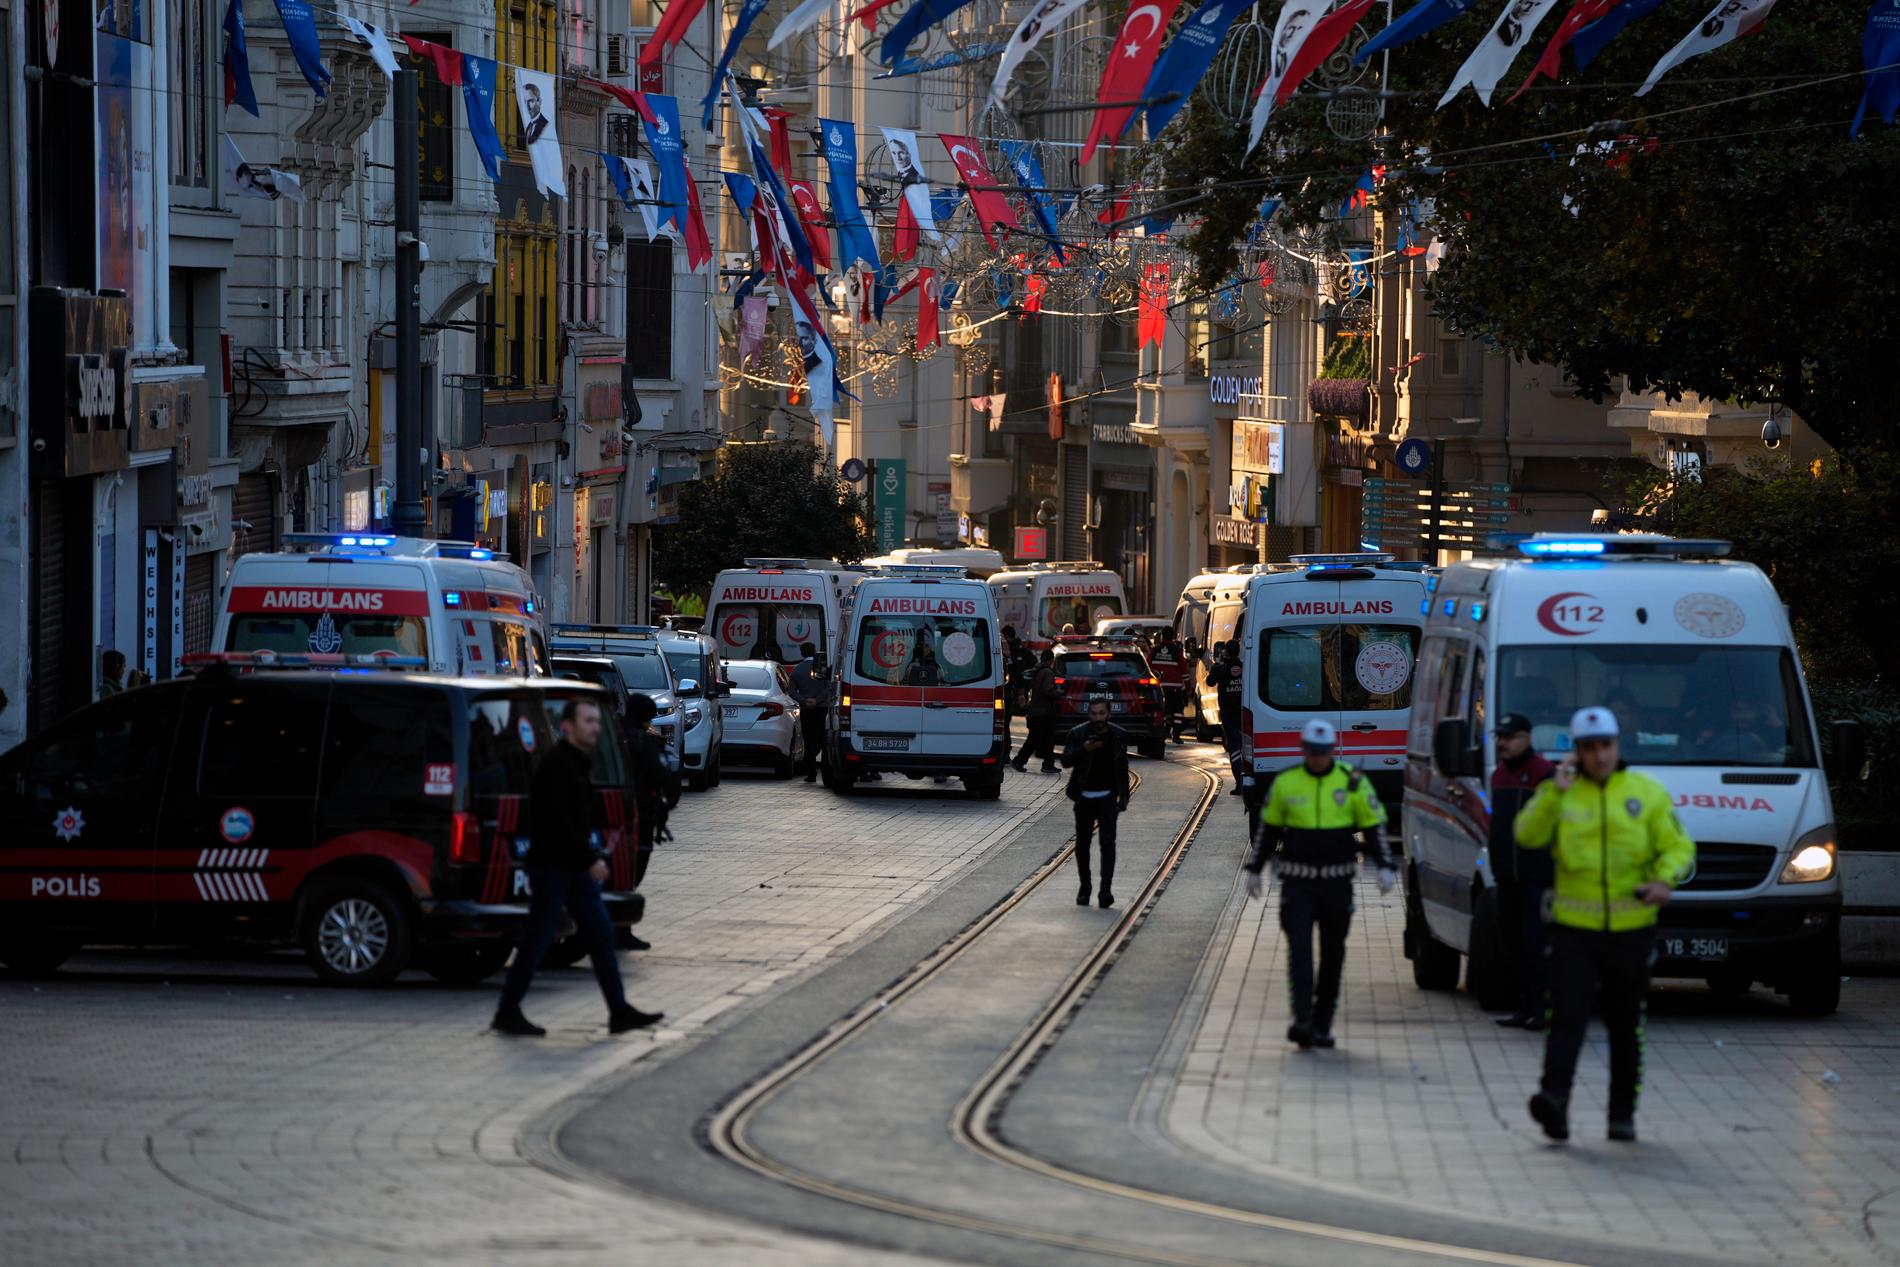 Ifølge ubekreftede meldinger kan det være snakk om et selvmordsangrep i Istanbul, men dette er ikke bekreftet. 